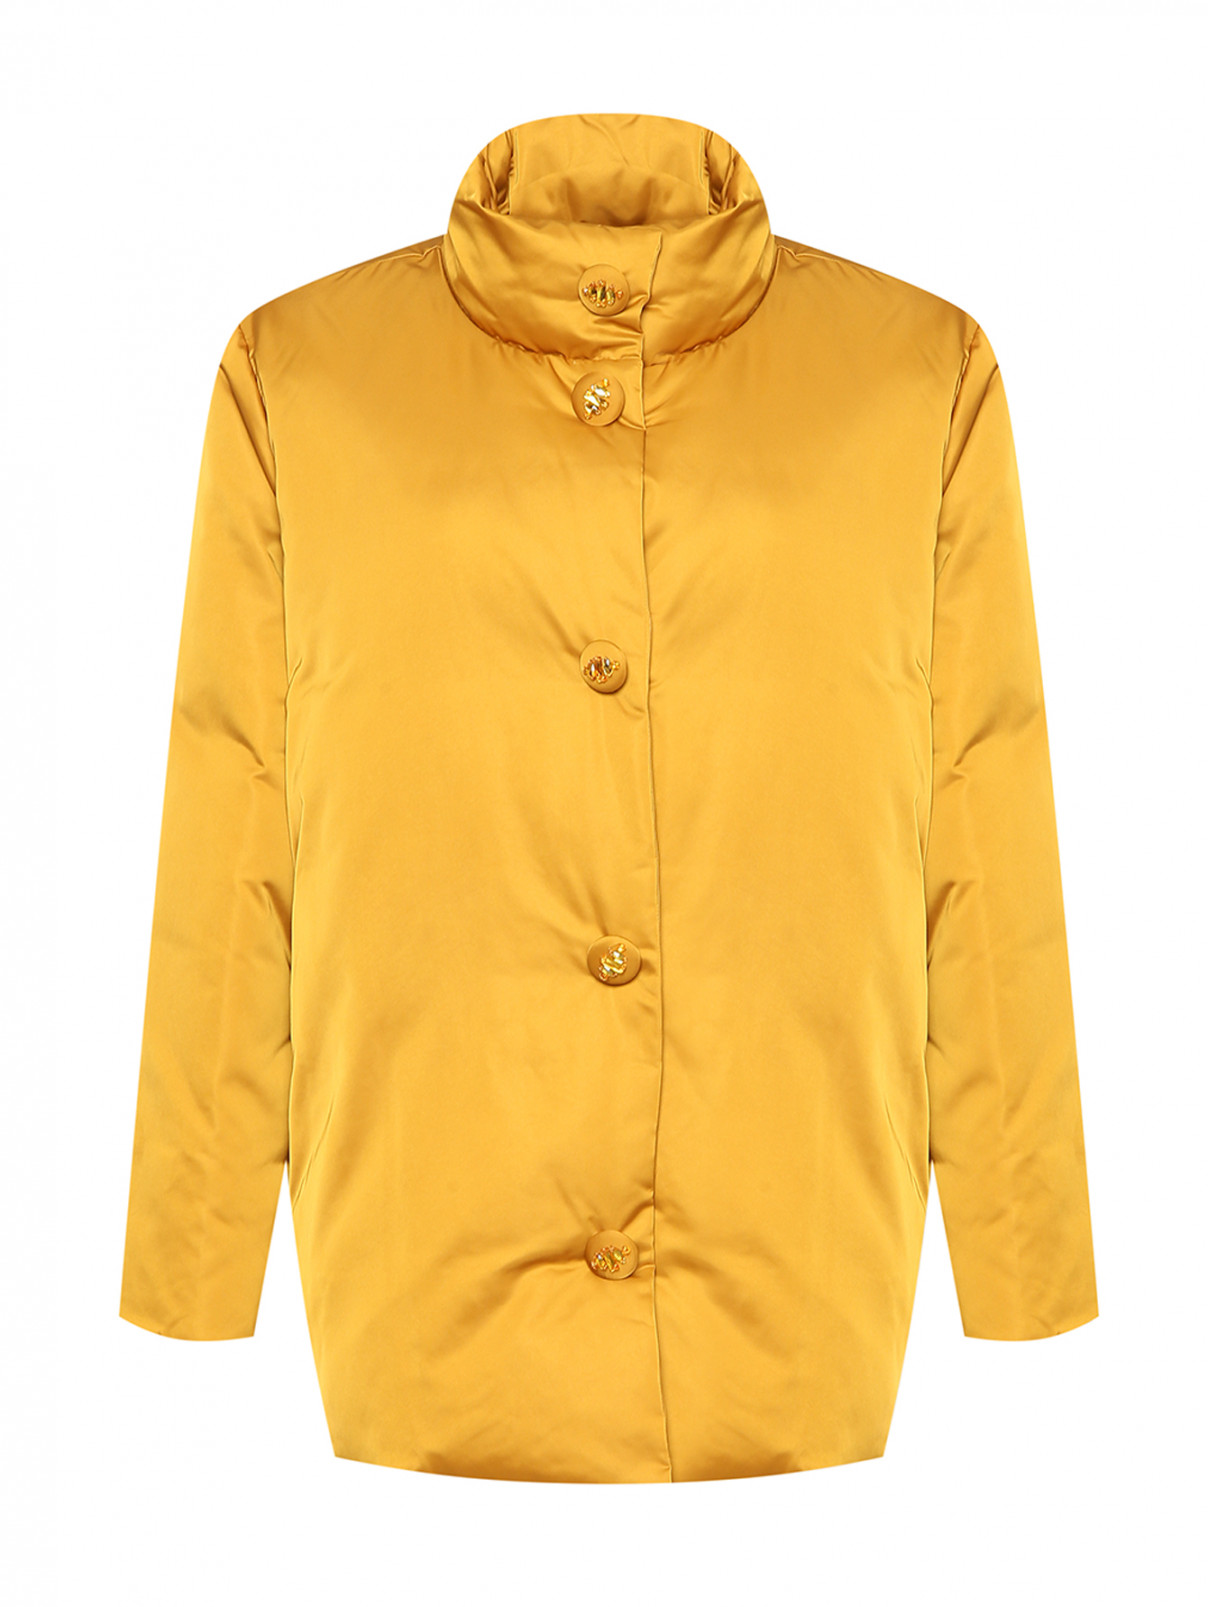 Утепленная куртка на магнитах Marina Rinaldi  –  Общий вид  – Цвет:  Оранжевый